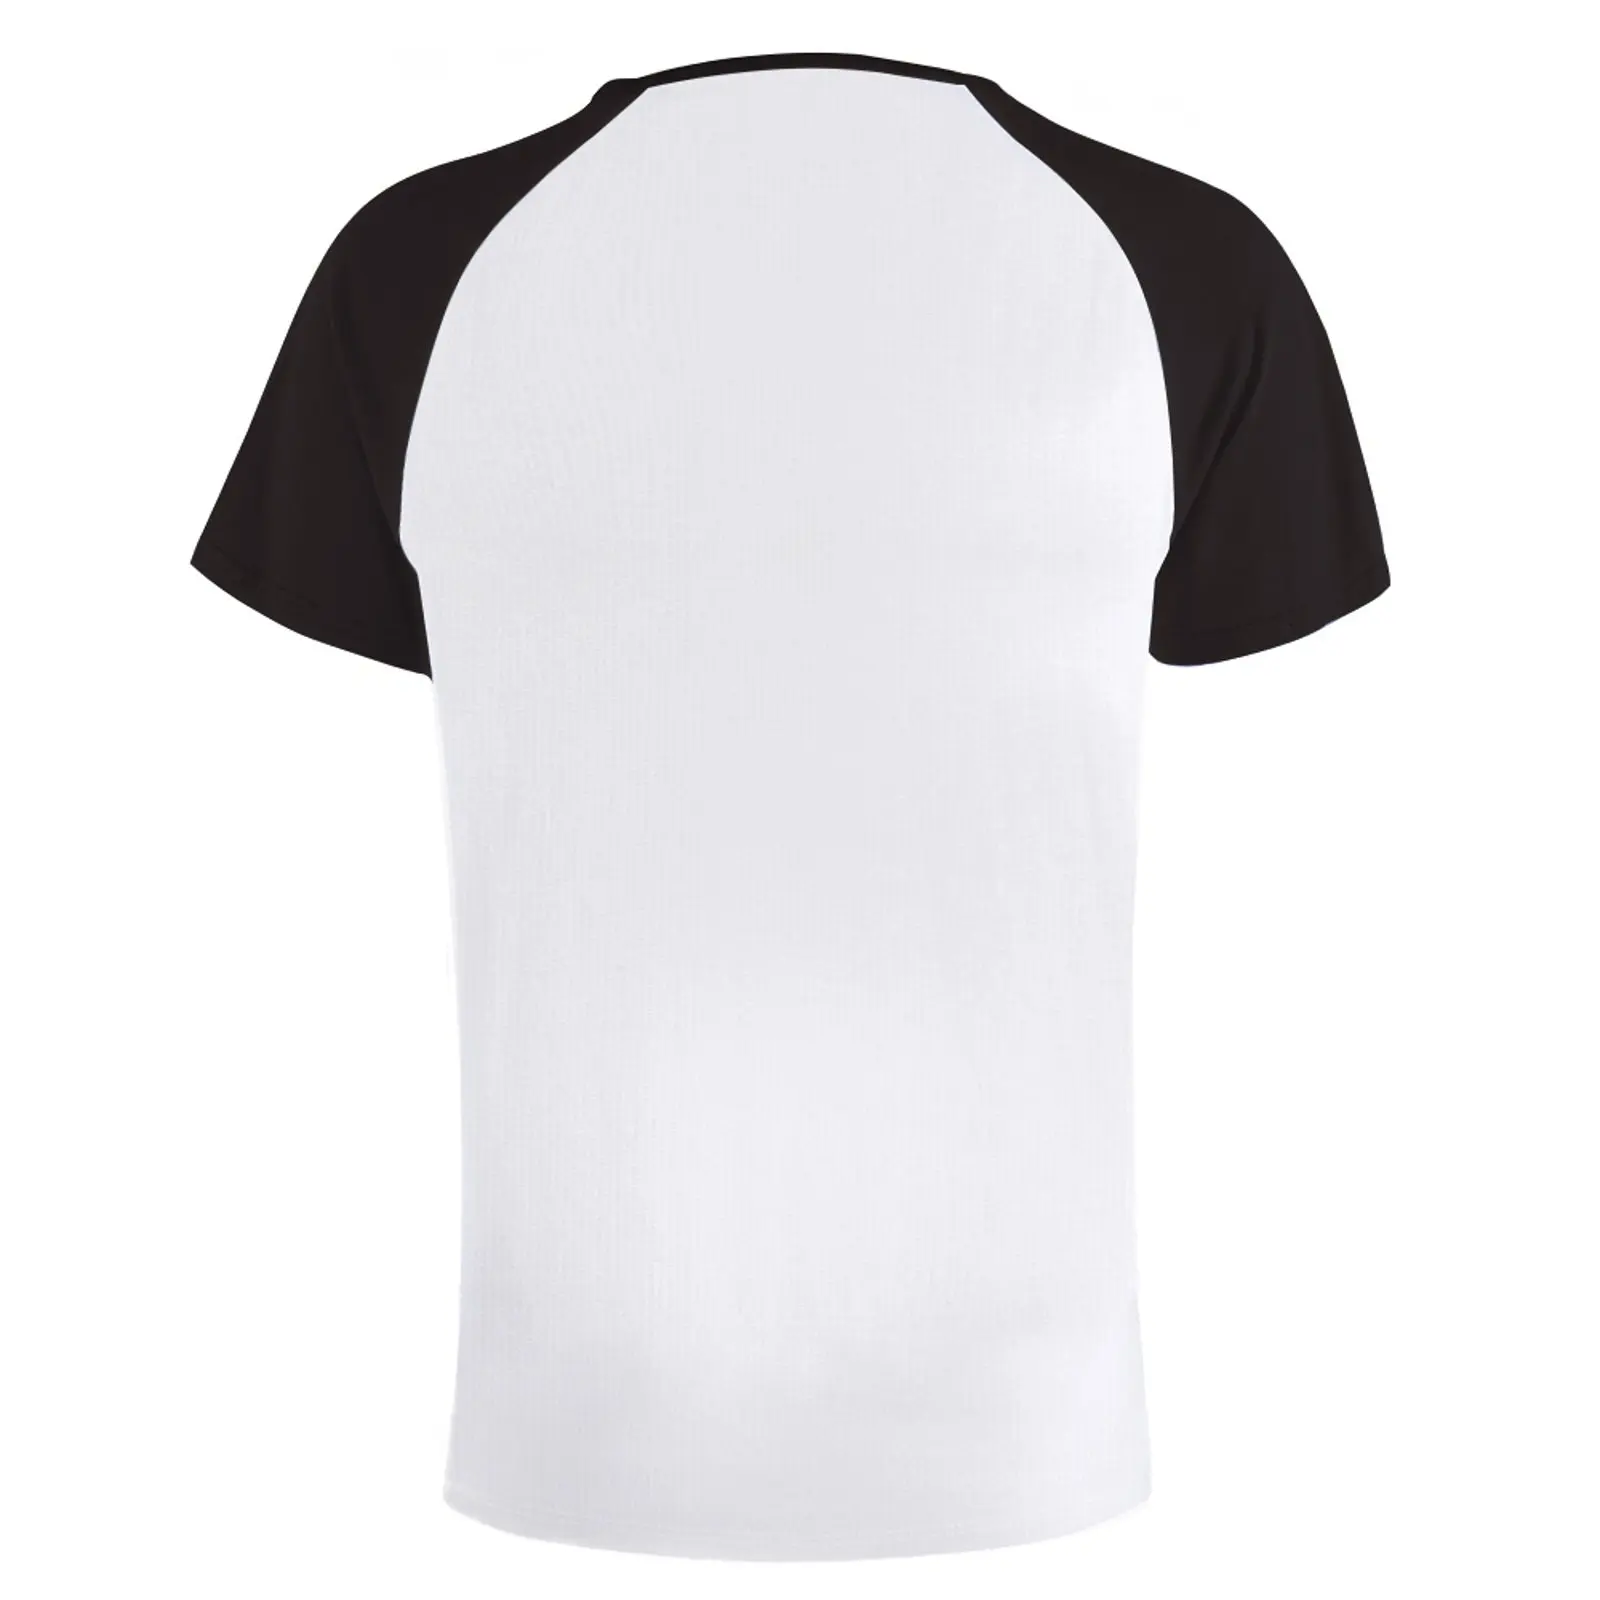 Футболка Neutral milk hotel, забавная футболка, пустые футболки, спортивные рубашки, футболки на заказ, создайте свои собственные мужские футболки с длинным рукавом